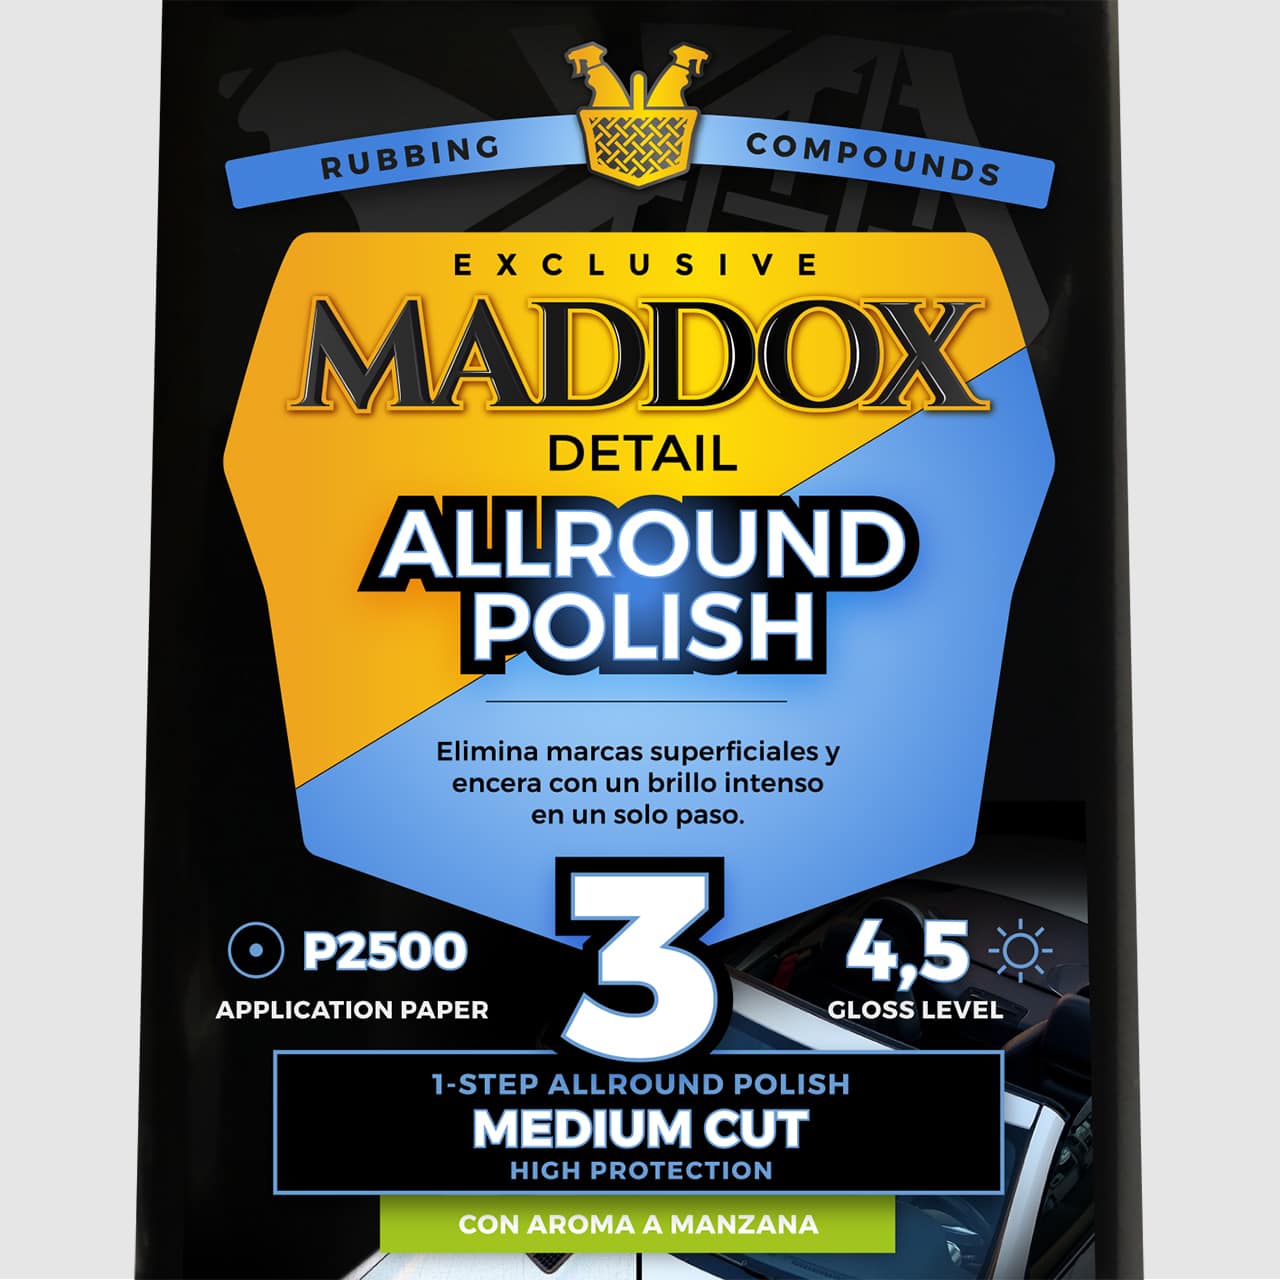 Maddox Detail lanza la primera gama de productos cerámicos en